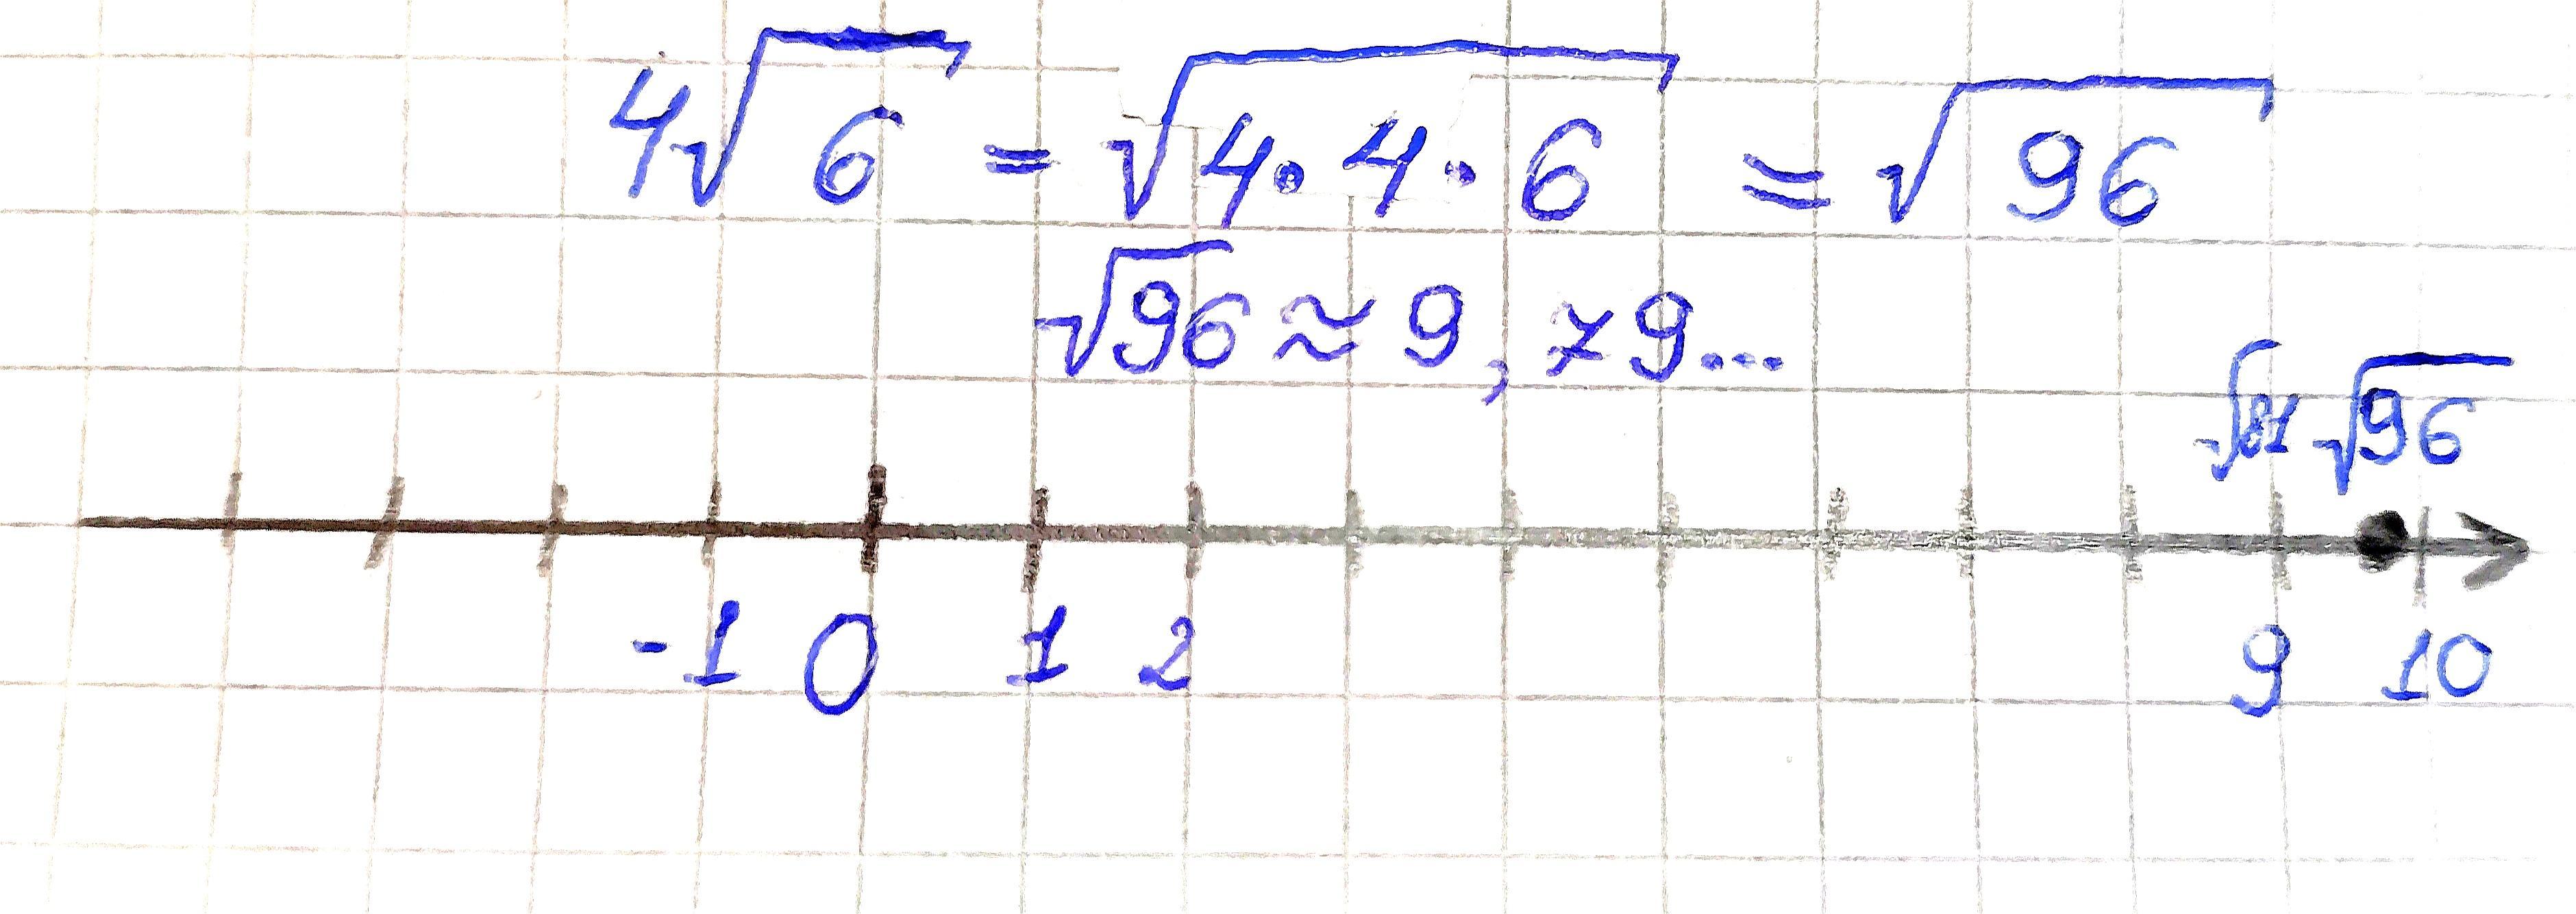 Отметьте на координатной прямой число корень 106. Отметьте на координатной прямой число 4 6.. Отметьте на координатной прямой число √34. Отметьте на координатной прямой число 4√11. Отметь на координатной прямой число √178.